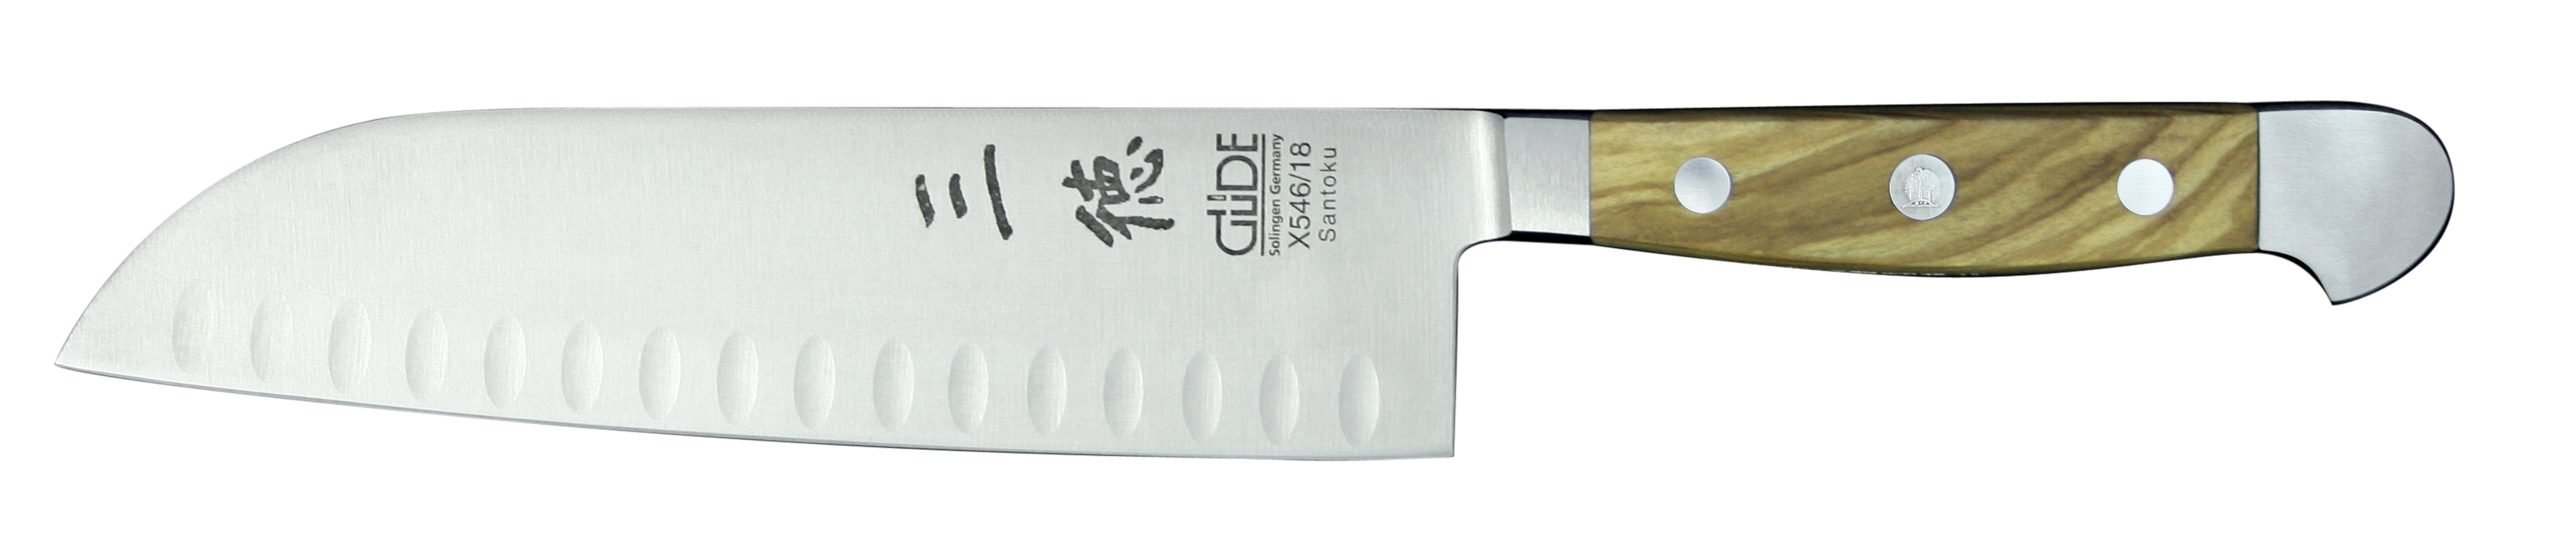 Güde Alpha Olive Santokumesser 18 cm mit Kullen - CVM-Messerstahl mit Griffschalen aus Olivenholz